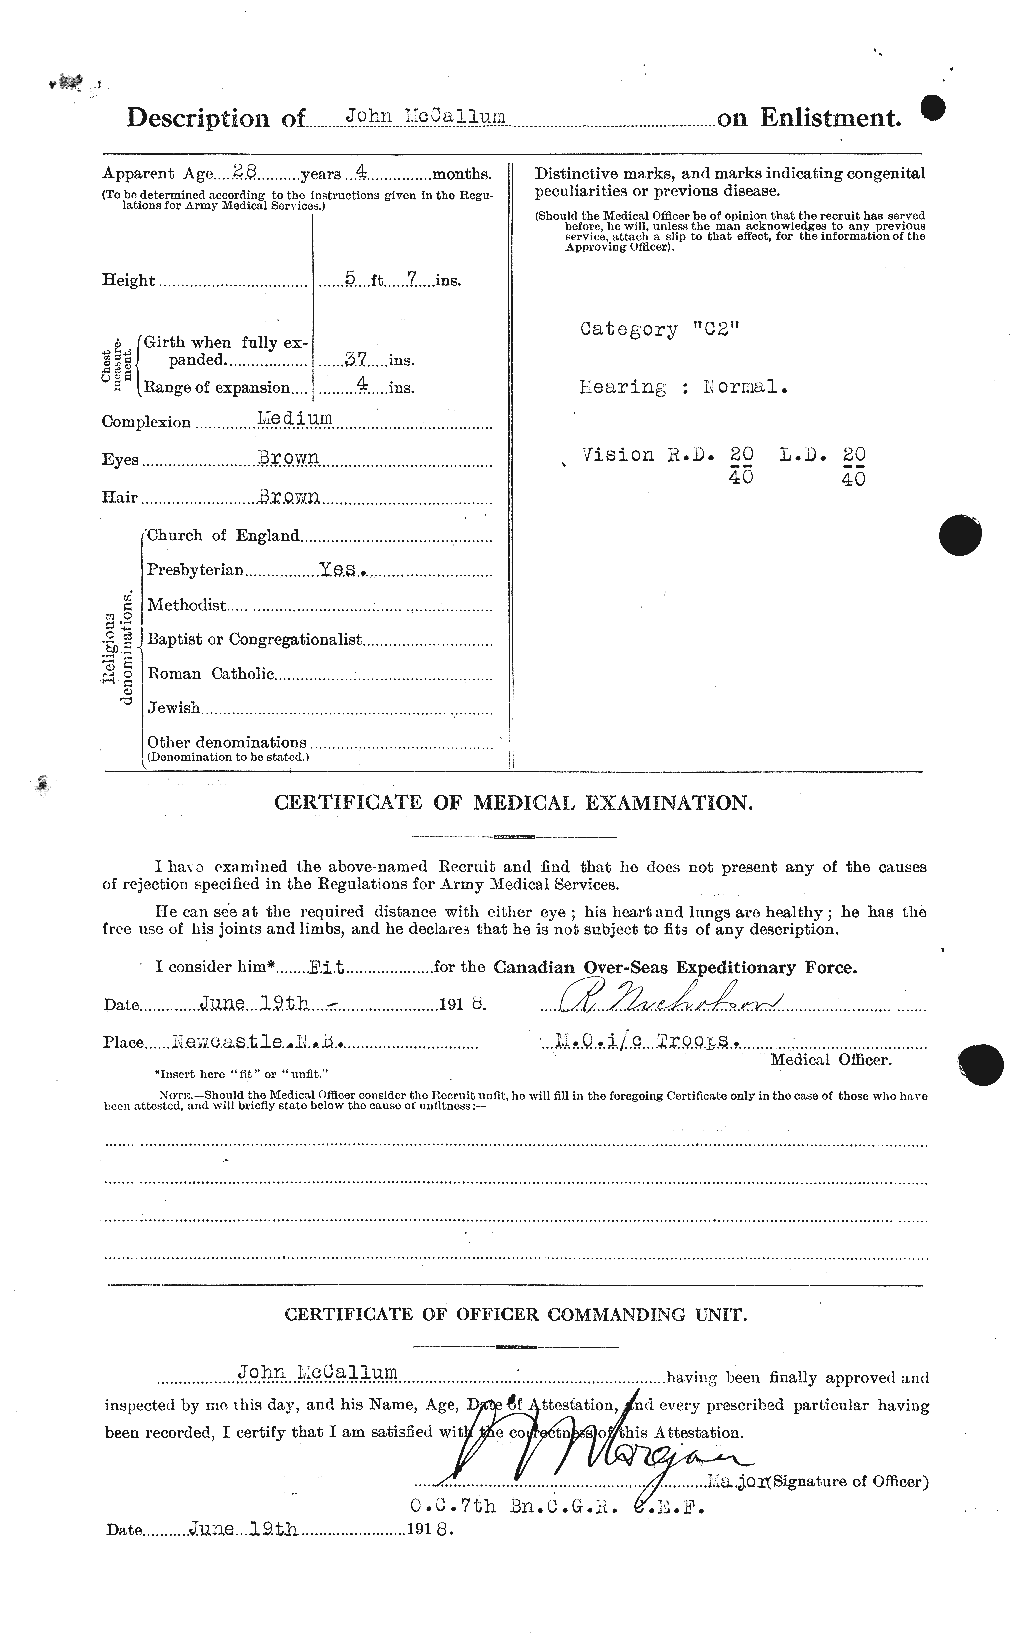 Dossiers du Personnel de la Première Guerre mondiale - CEC 131532b